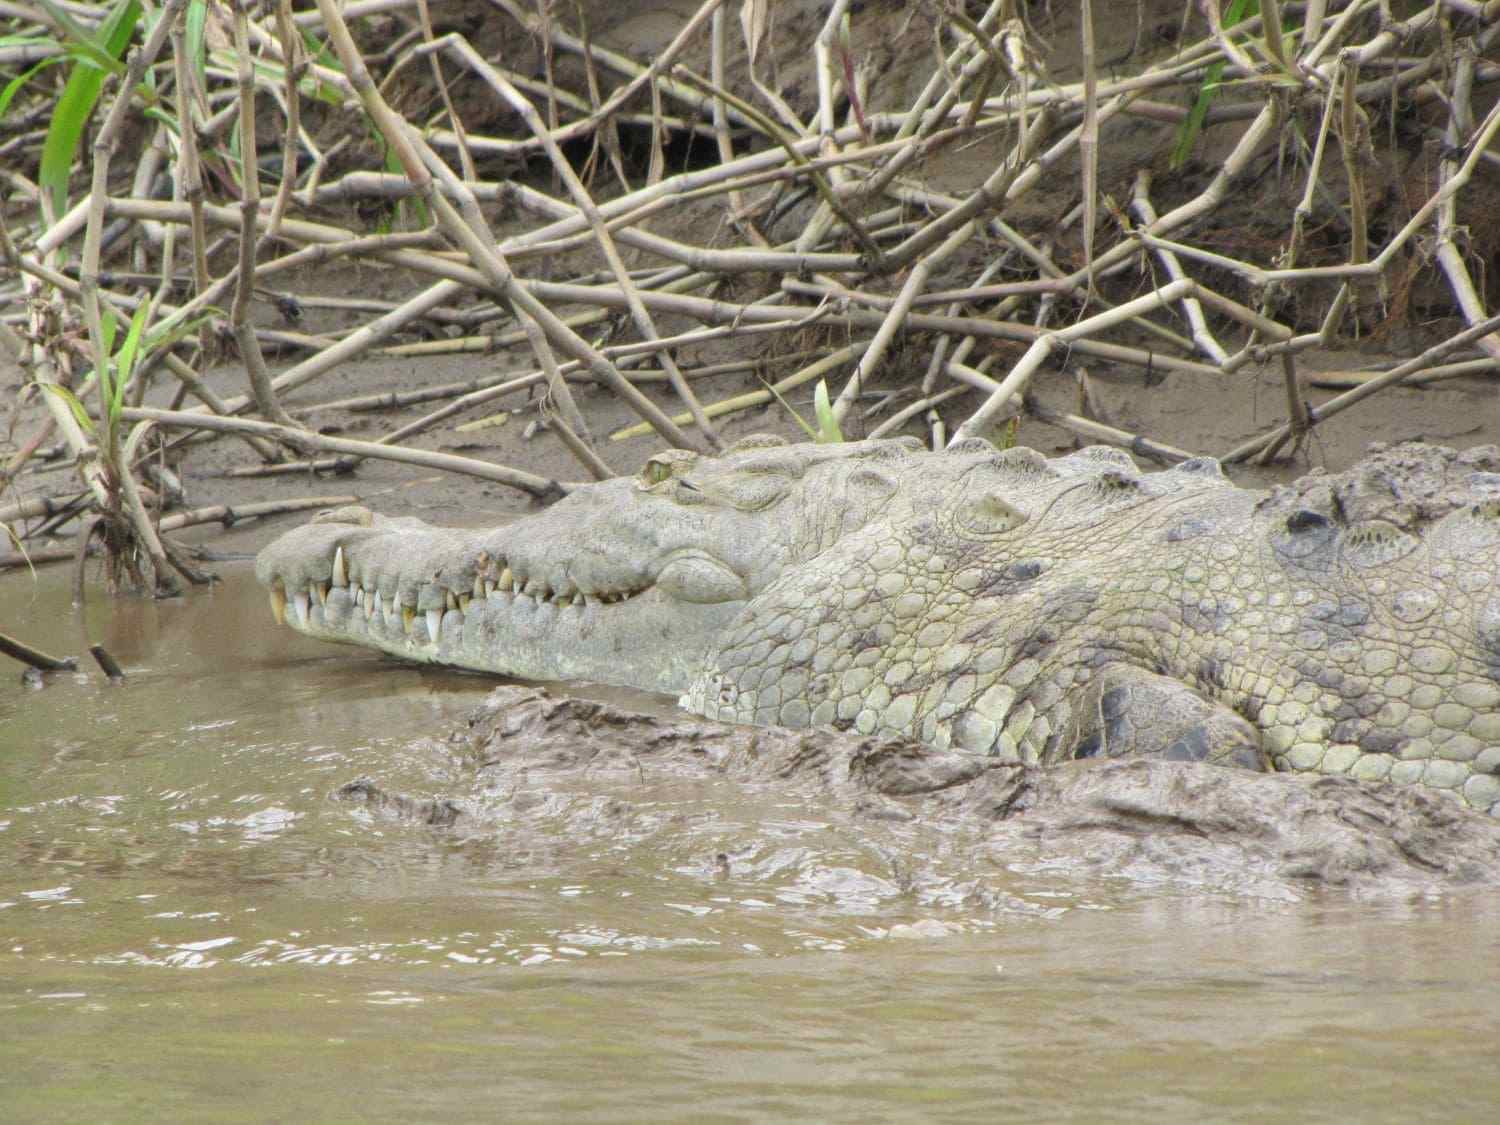 Crocodile, Tempisque